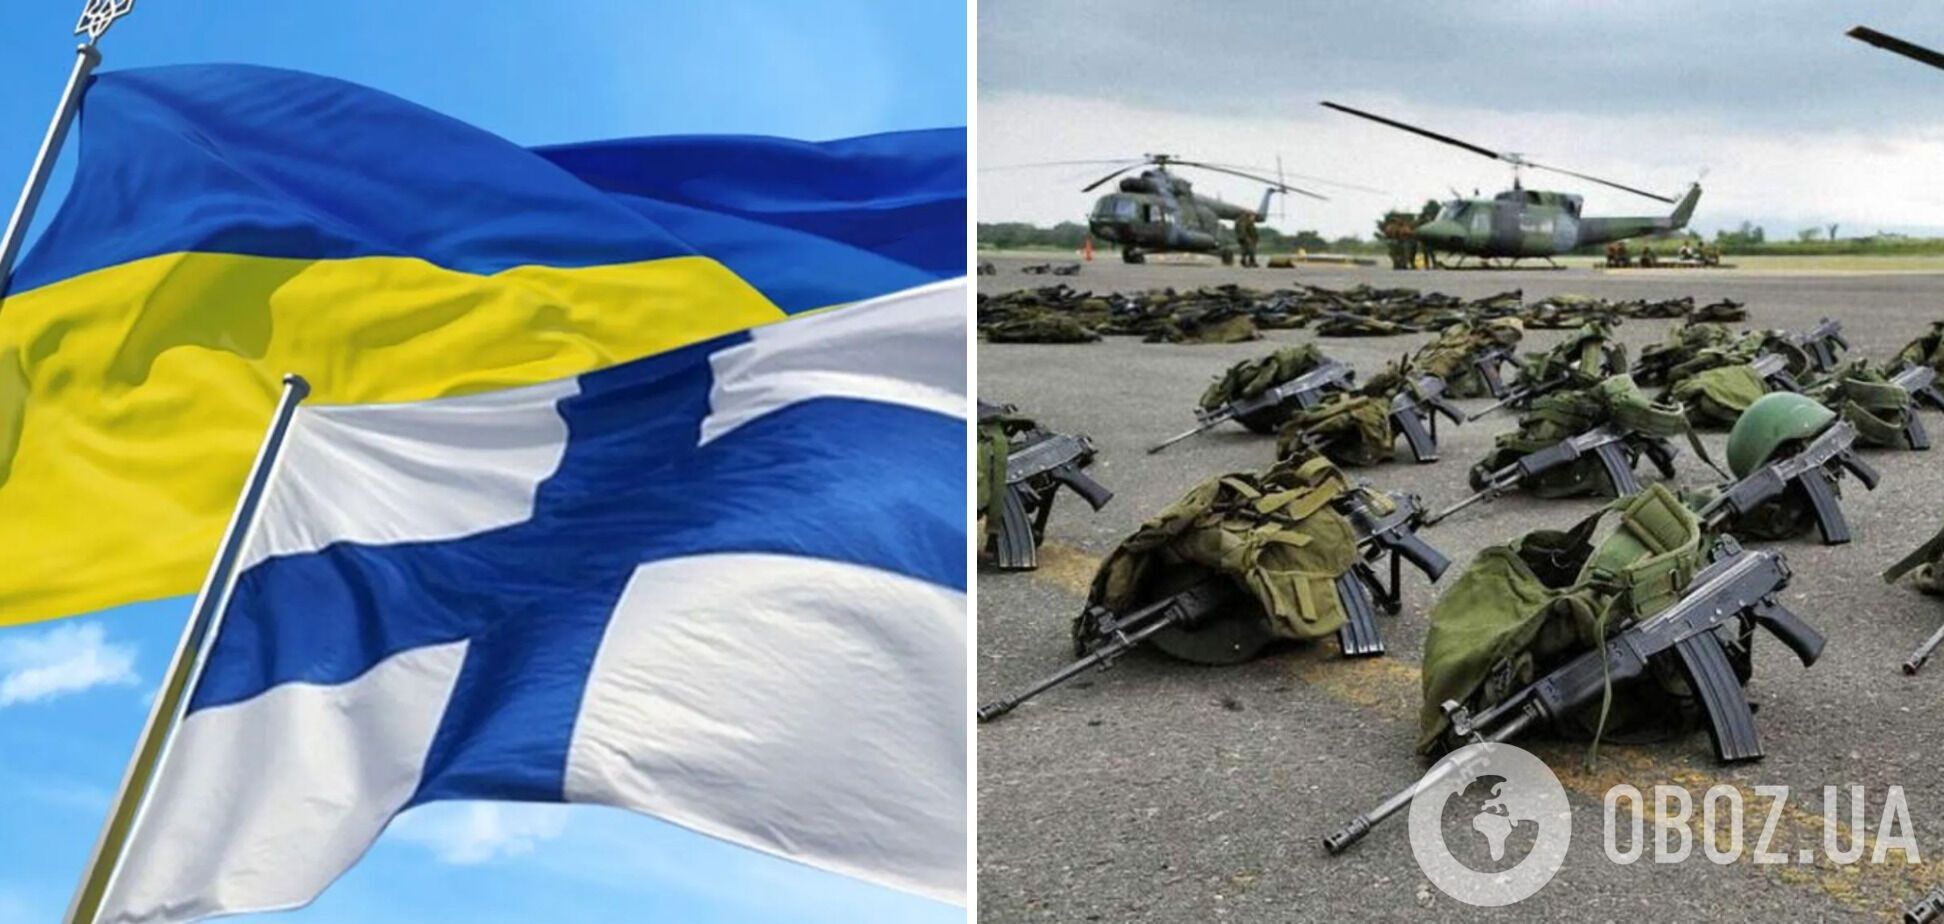 Финляндия продолжает помогать Украине